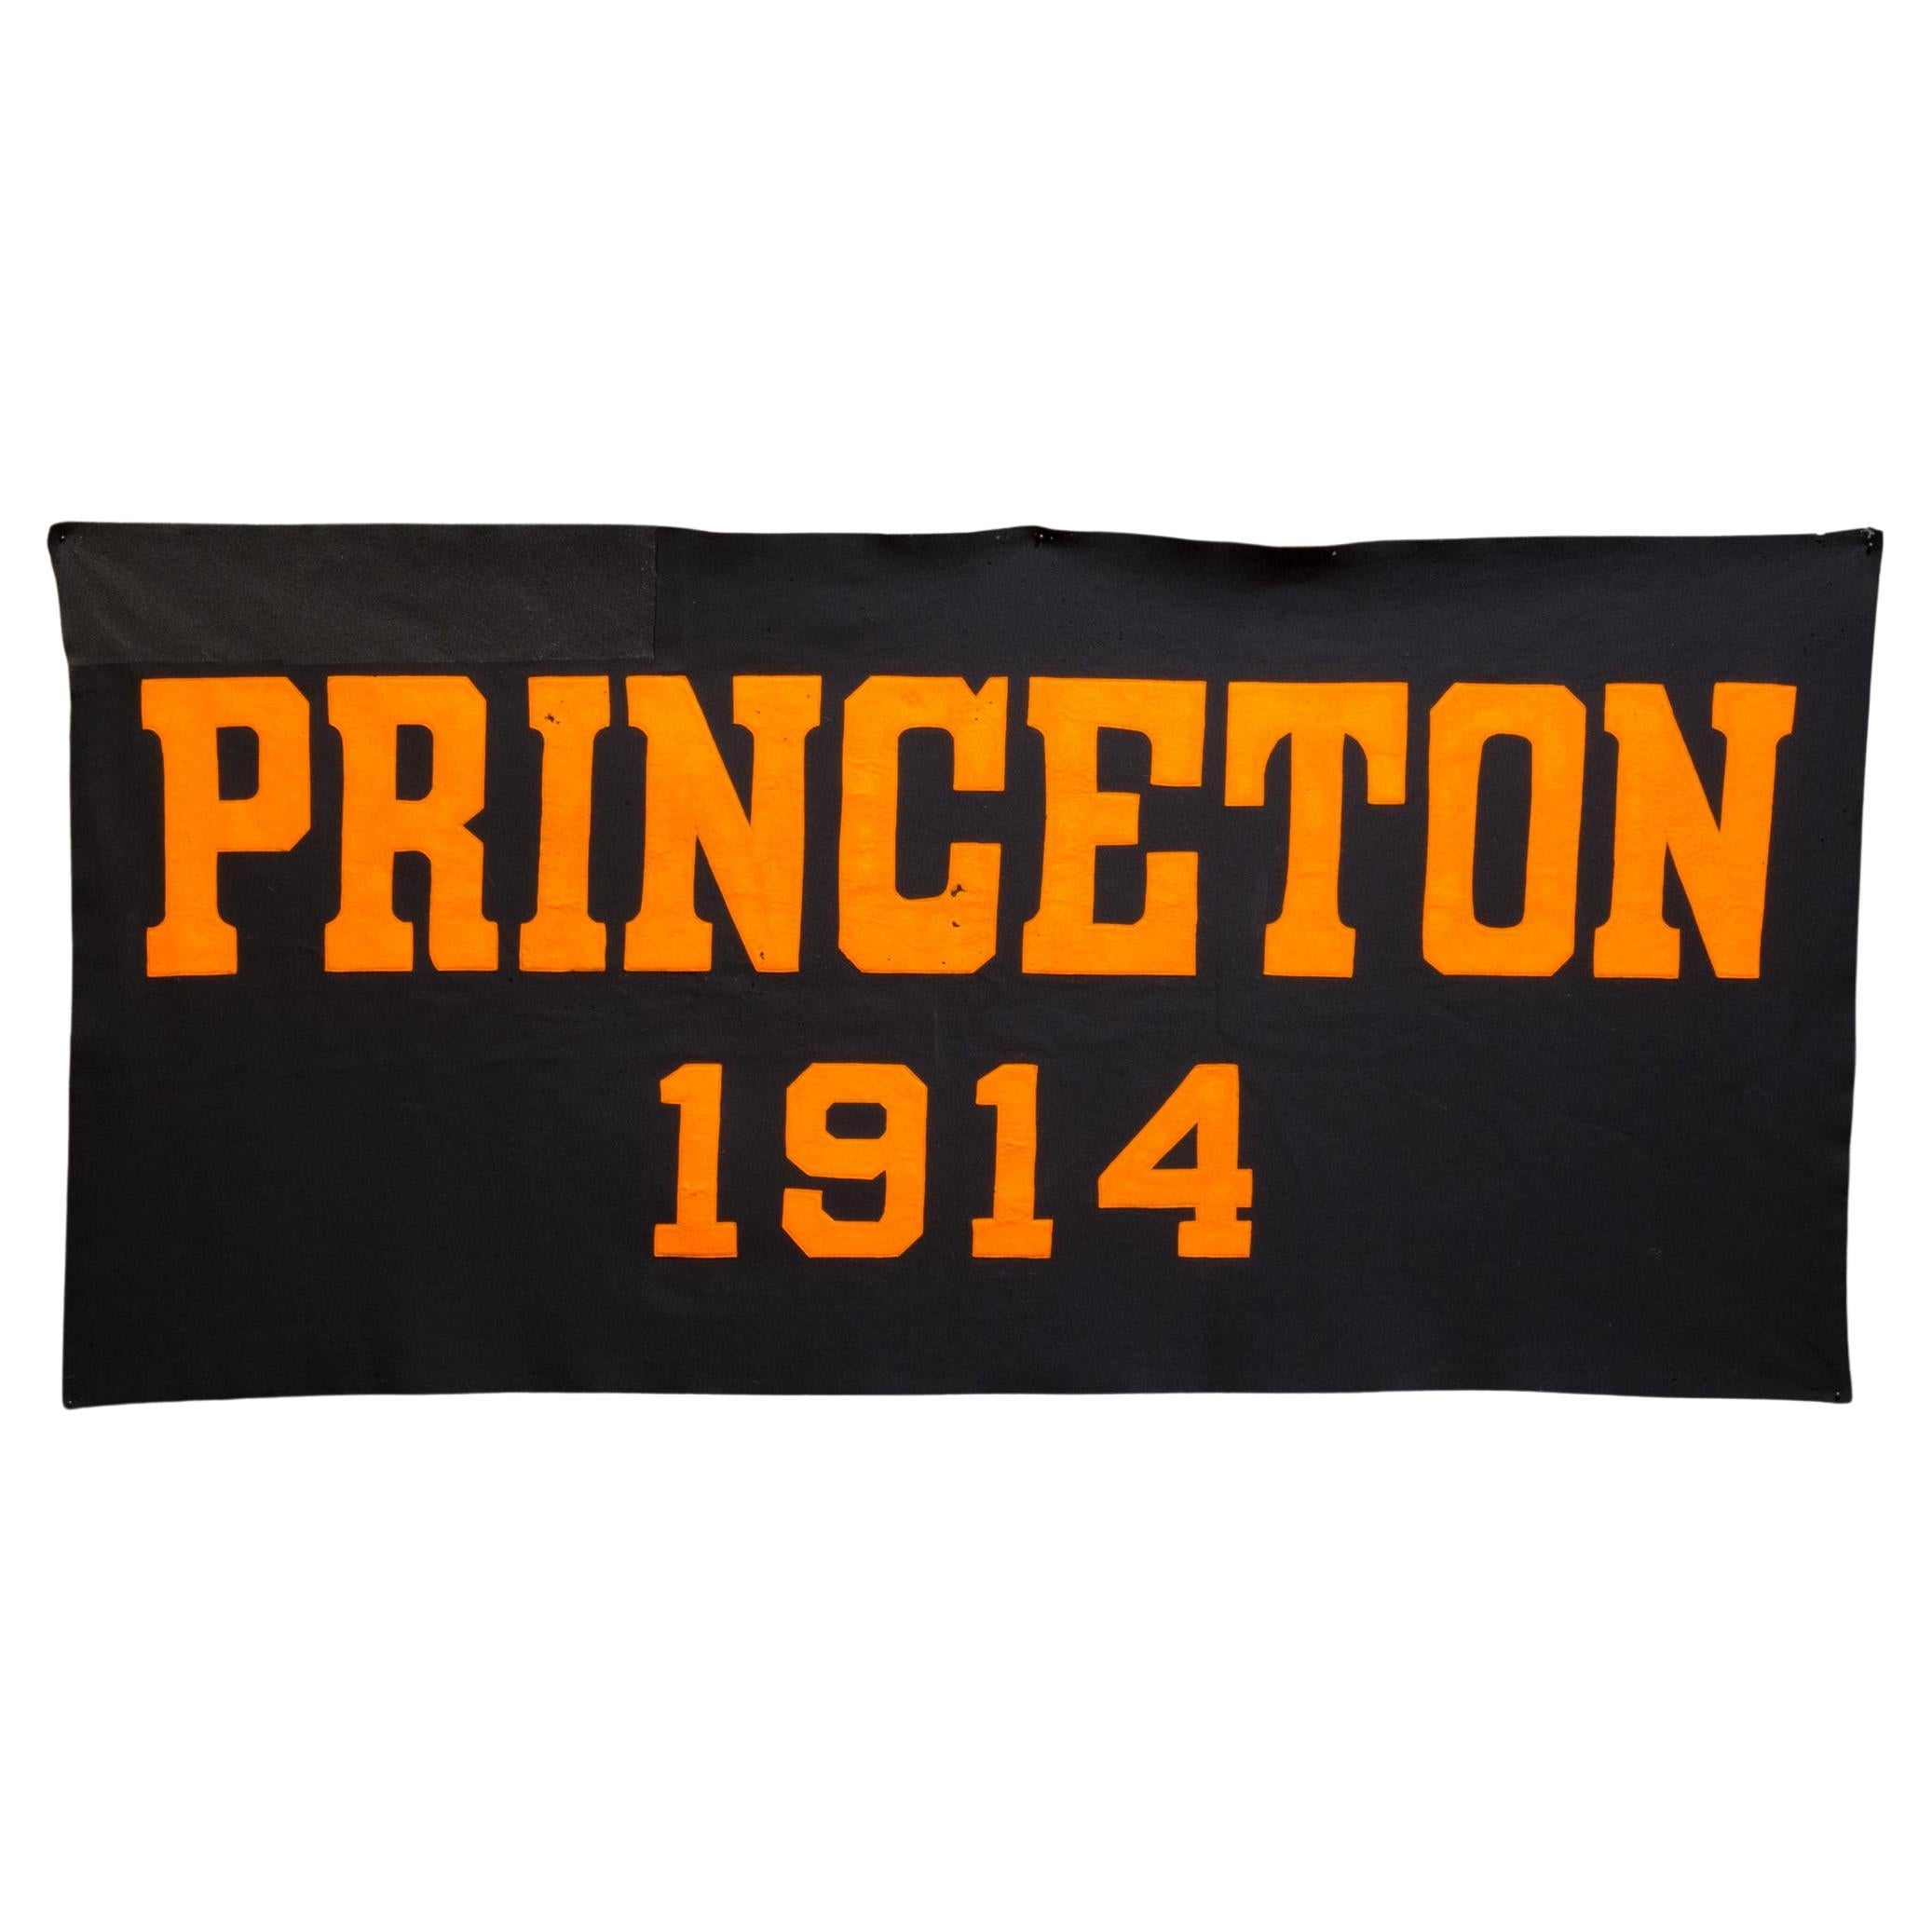 Grand bannière de l'université de Princeton, C.1914  